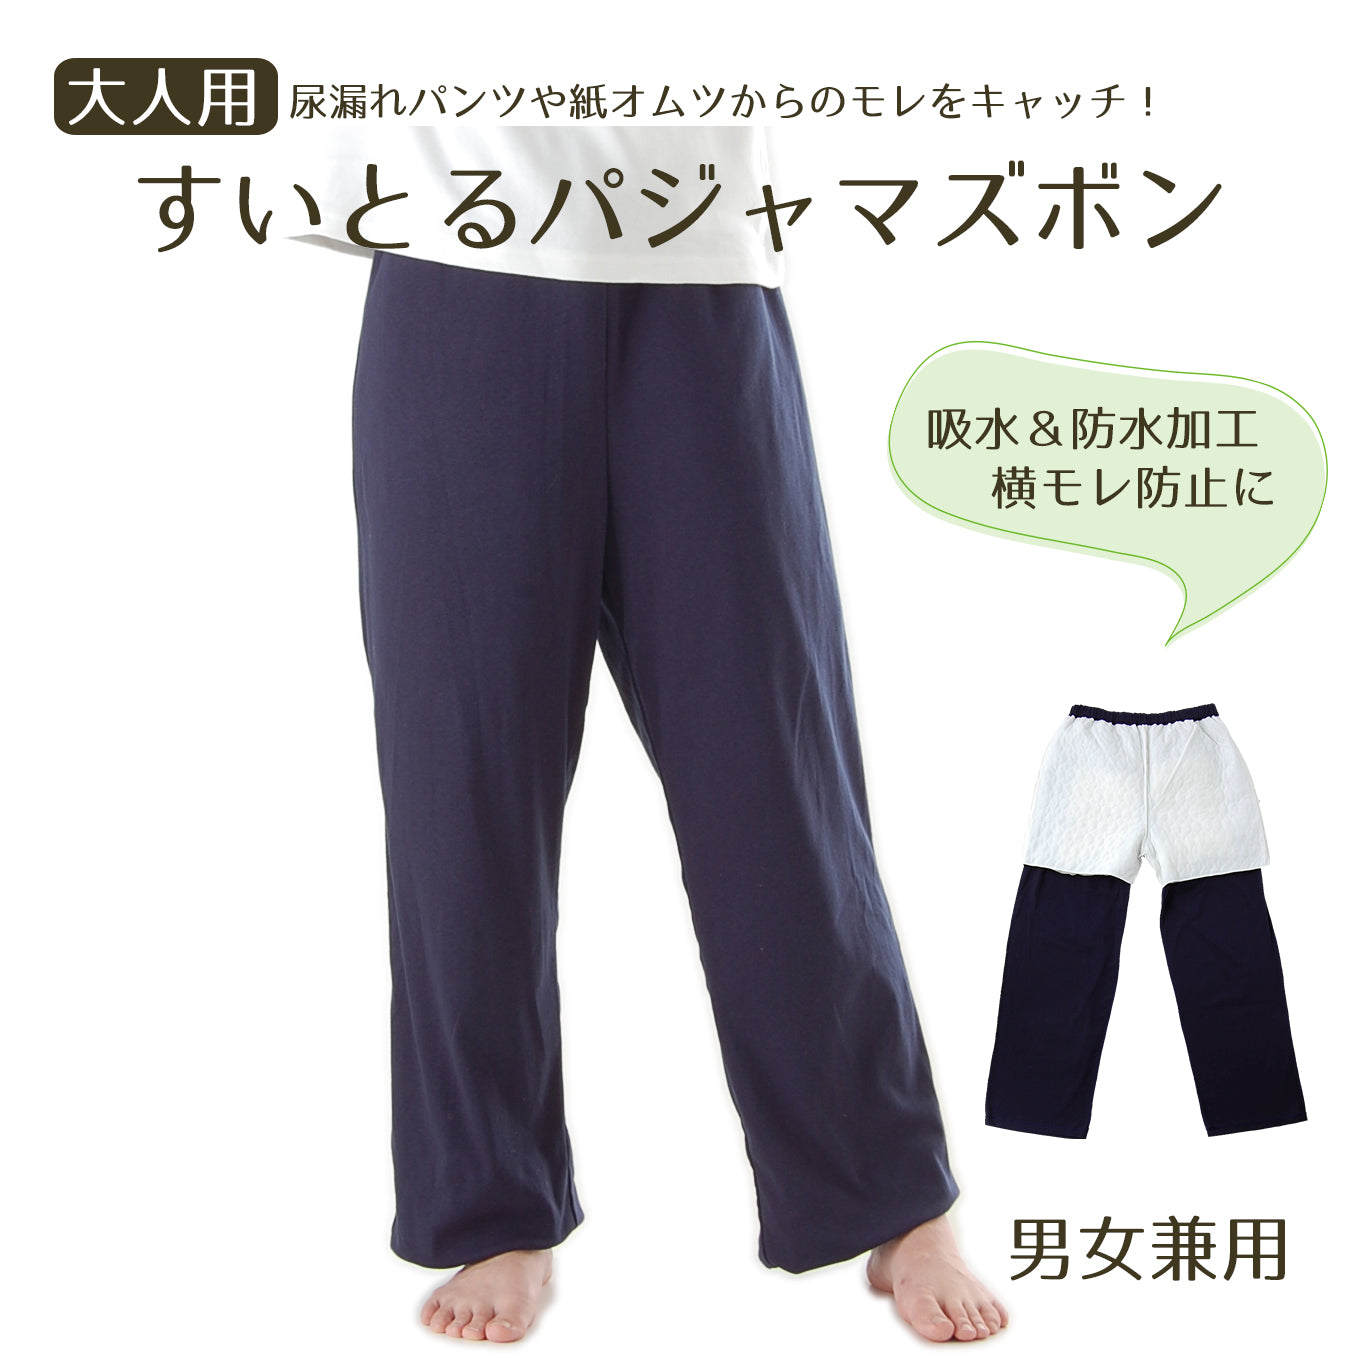 60cc】日本製 すいとるパジャマ ズボン(下だけ_男女兼用)